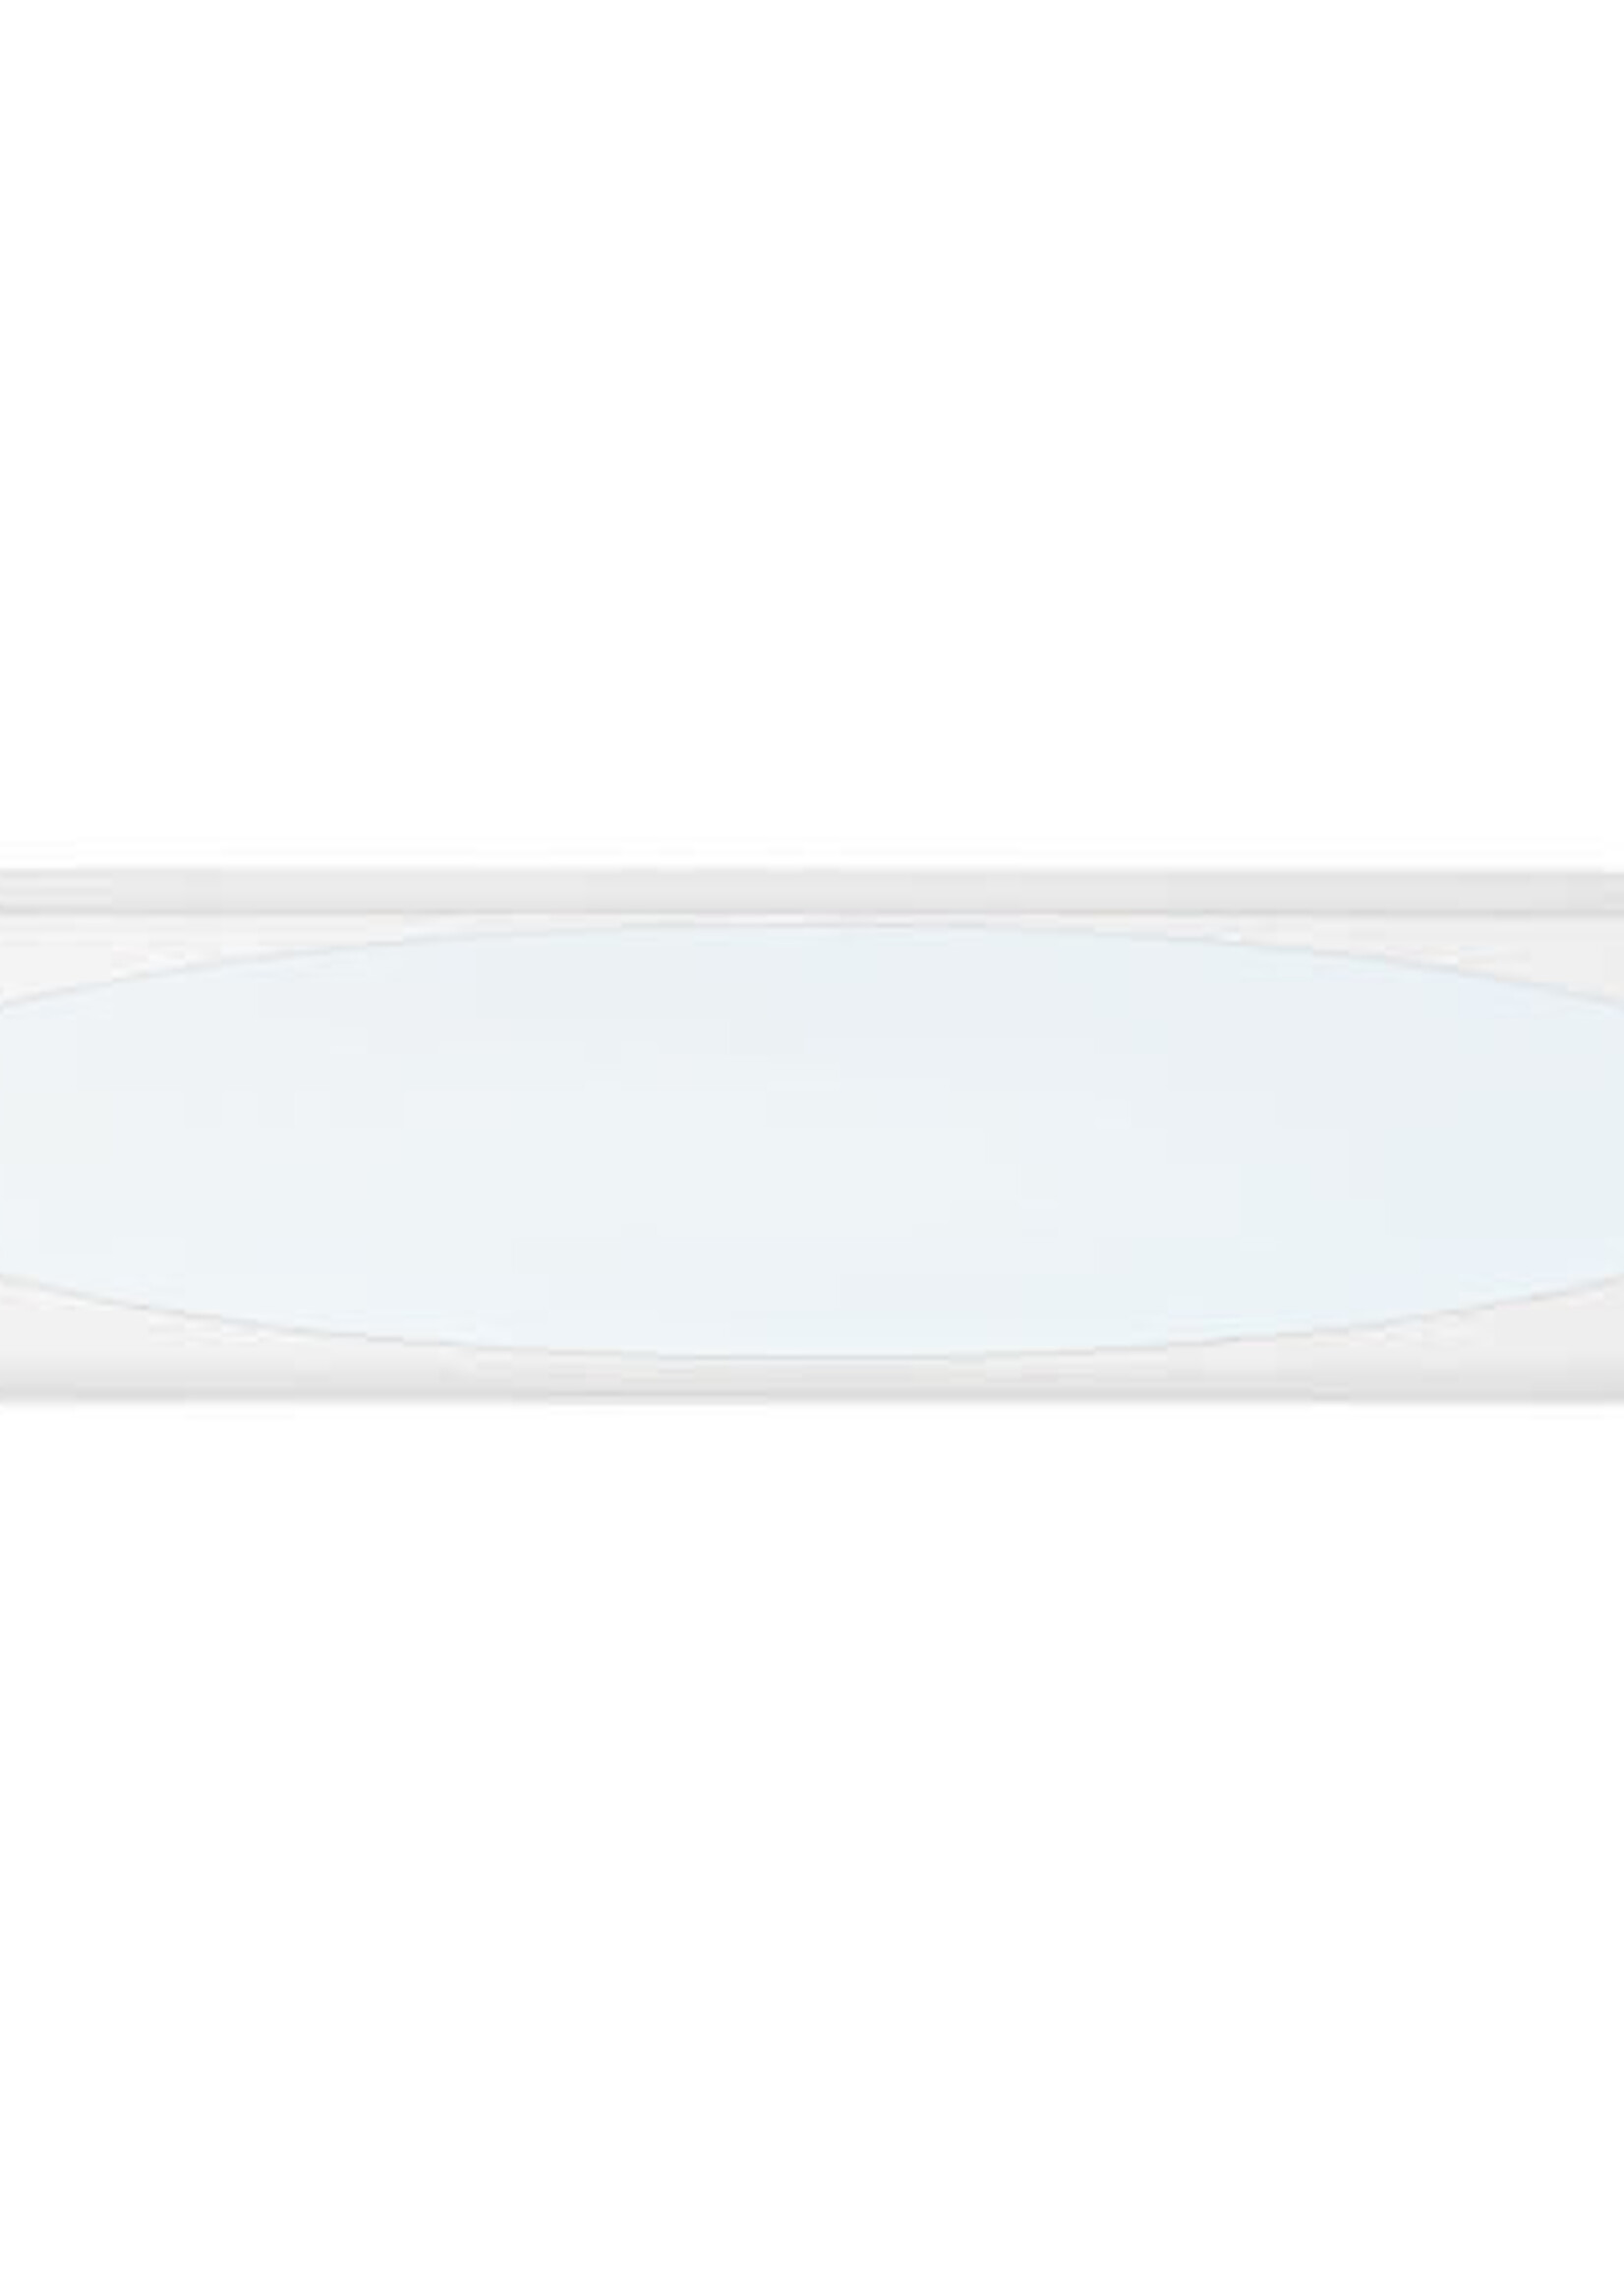 LEDWINKEL-Online LED Paneel met ovale lichtplaat 30x120 cm 36W